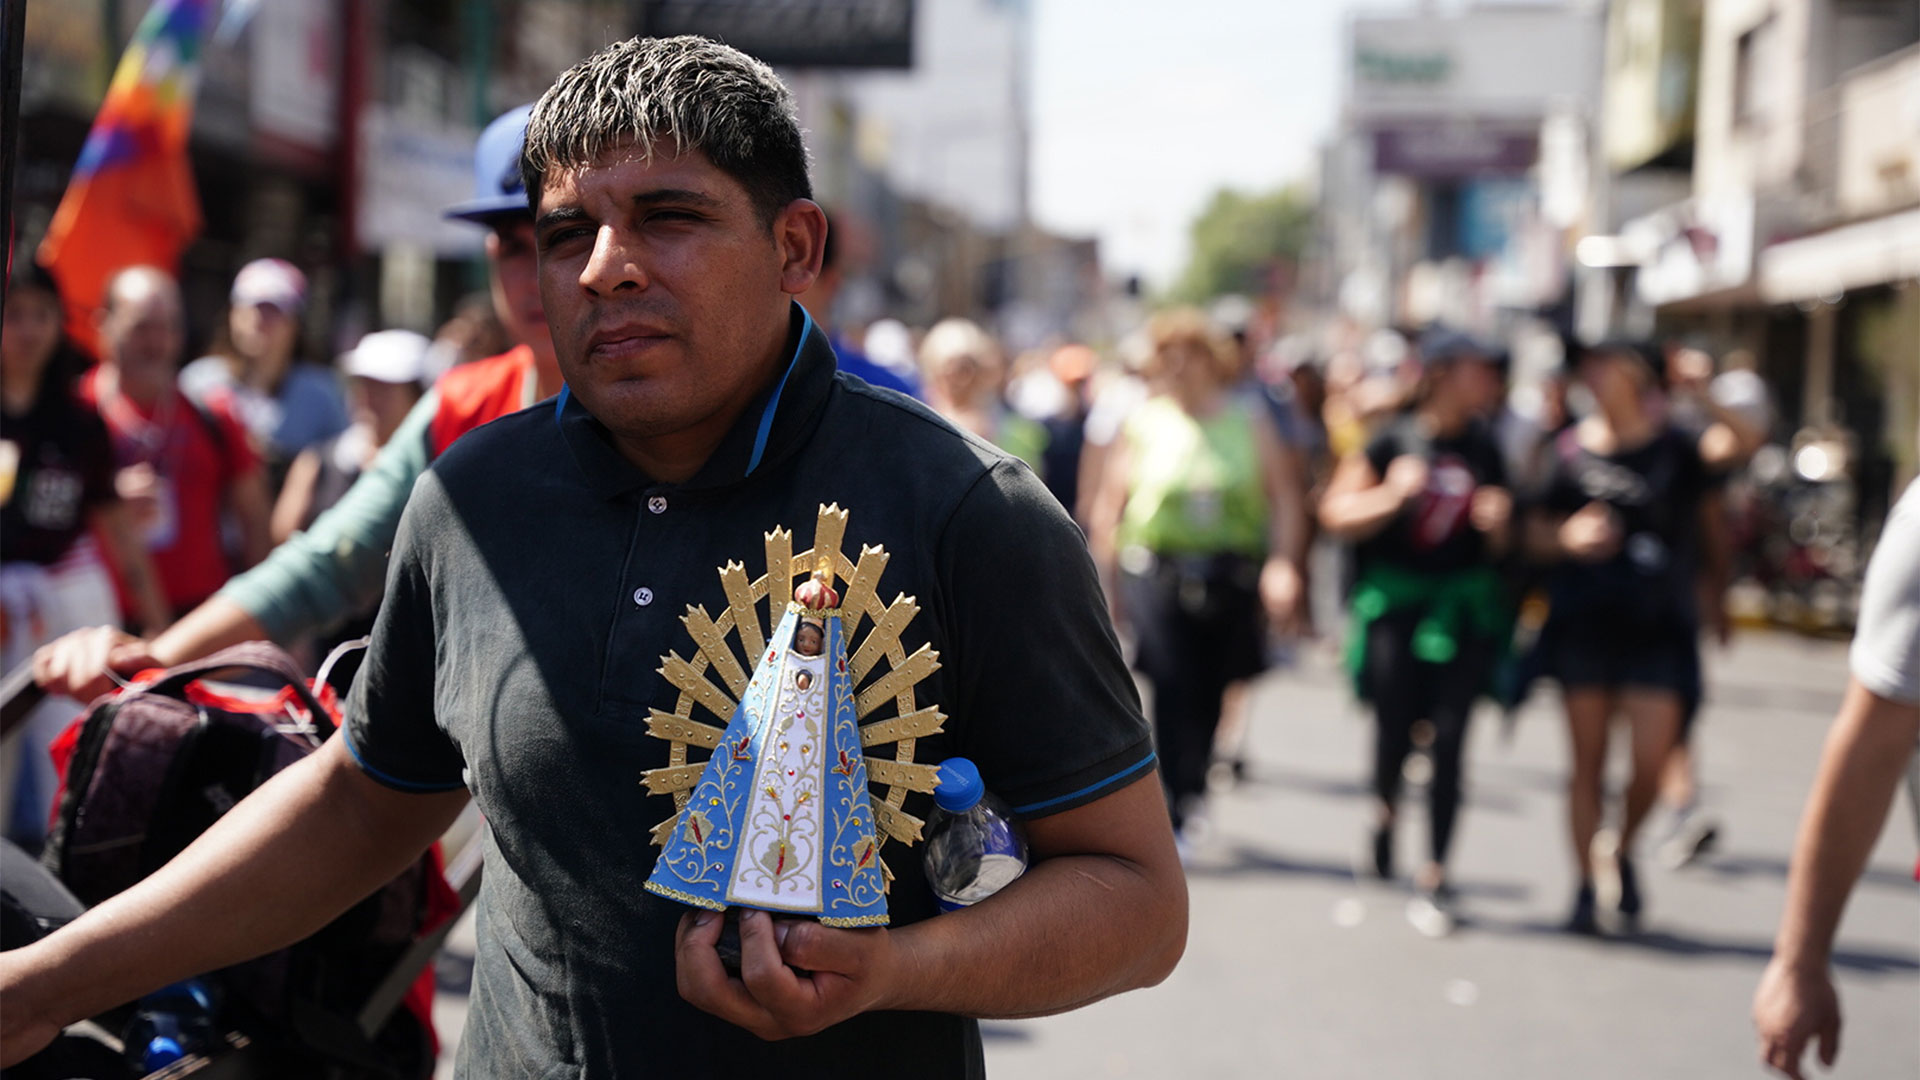 Además de collares, estampitas, pulseras y banderines, muchos llevaban en sus brazos la escultura de la Virgen